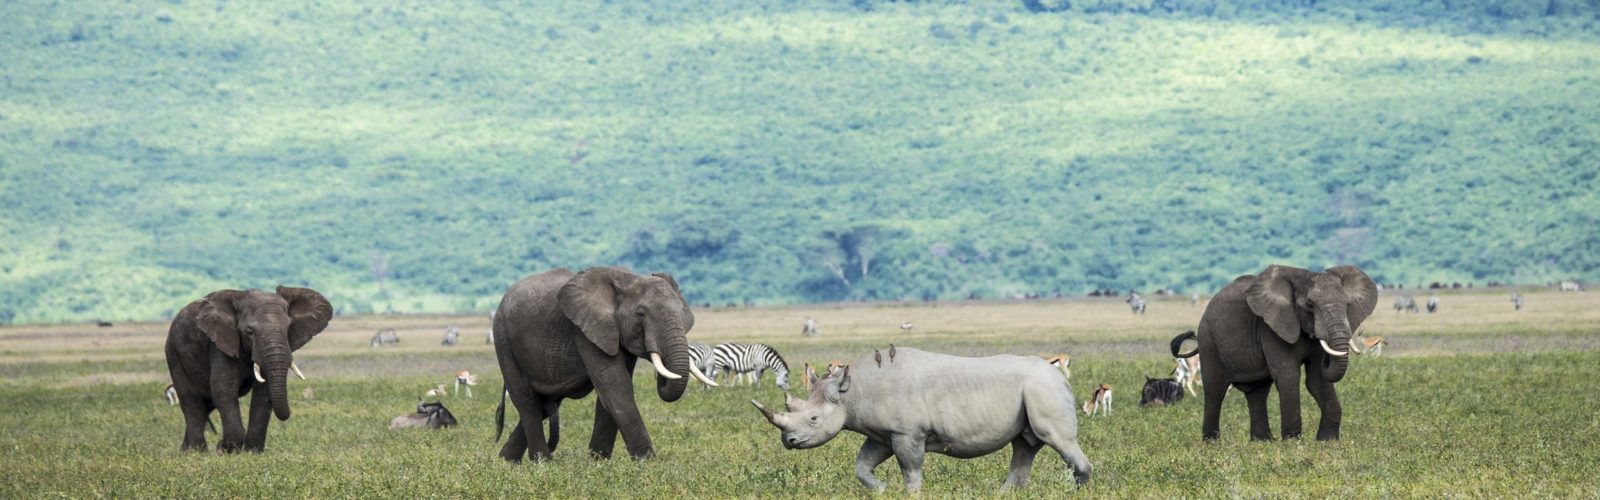 rhino-ngorongoro-crater-tanzania